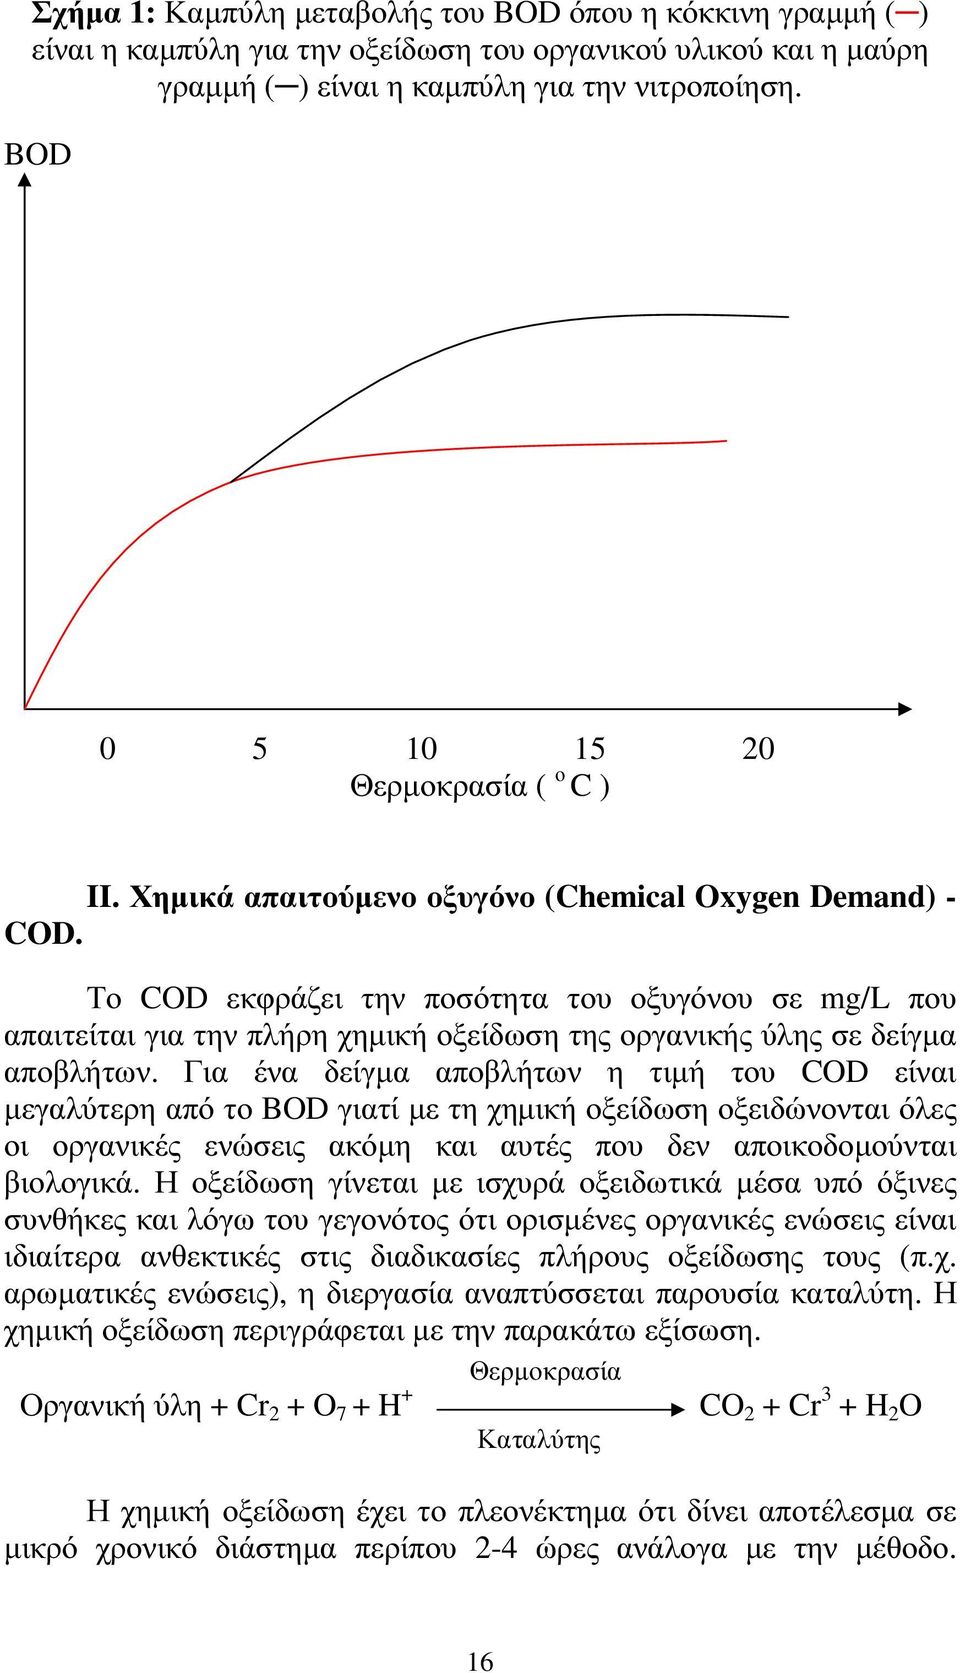 Το COD εκφράζει την ποσότητα του οξυγόνου σε mg/l που απαιτείται για την πλήρη χηµική οξείδωση της οργανικής ύλης σε δείγµα αποβλήτων.